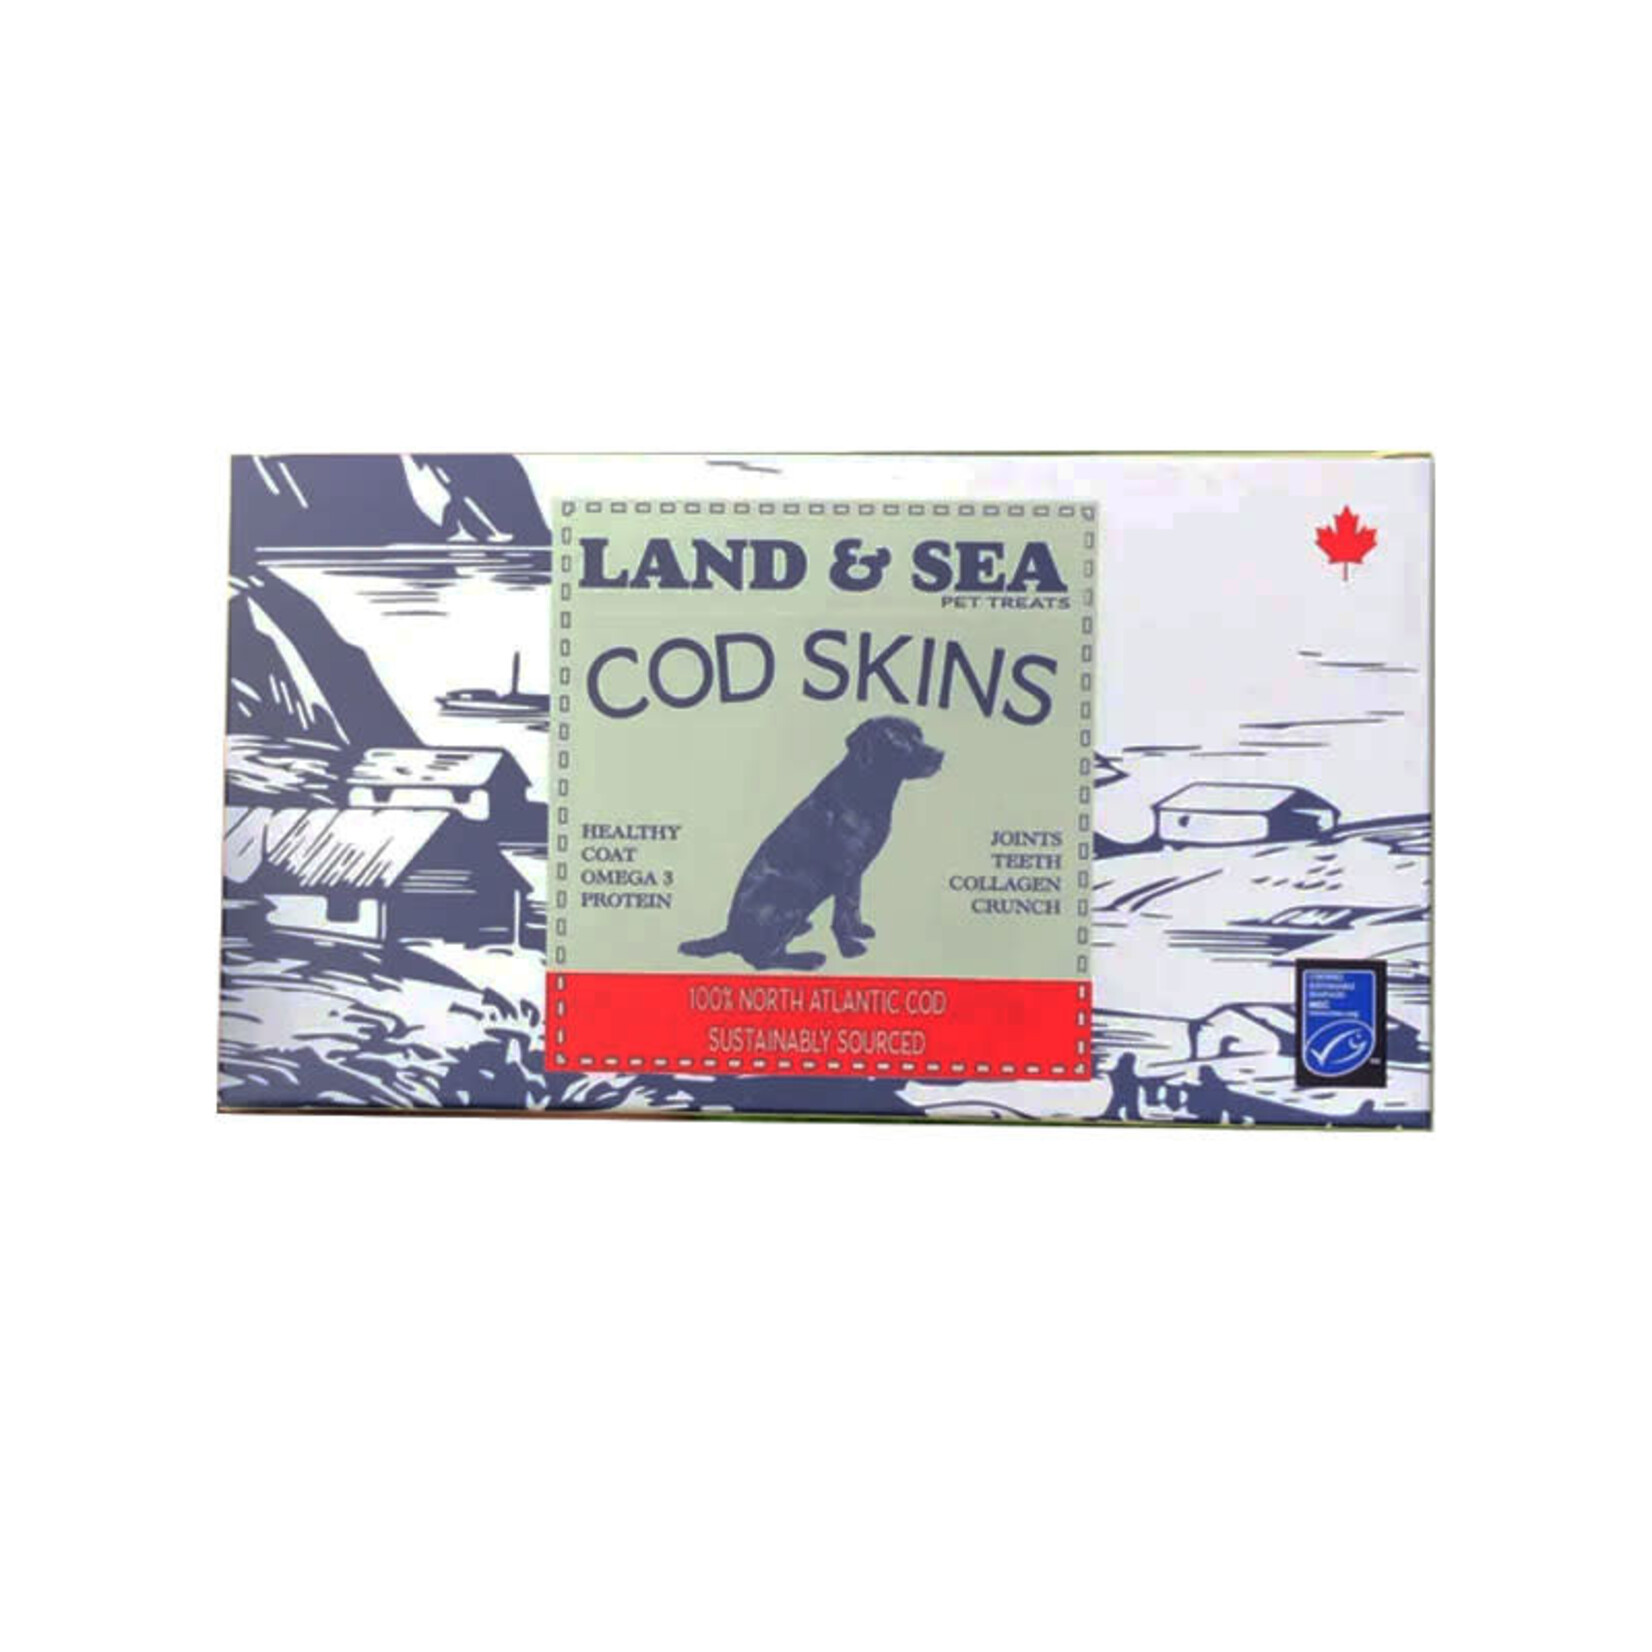 Land & Sea Pet Treats Land & Sea Pet Treats - Peaux de Morue - Coffret Découpes de Qualité